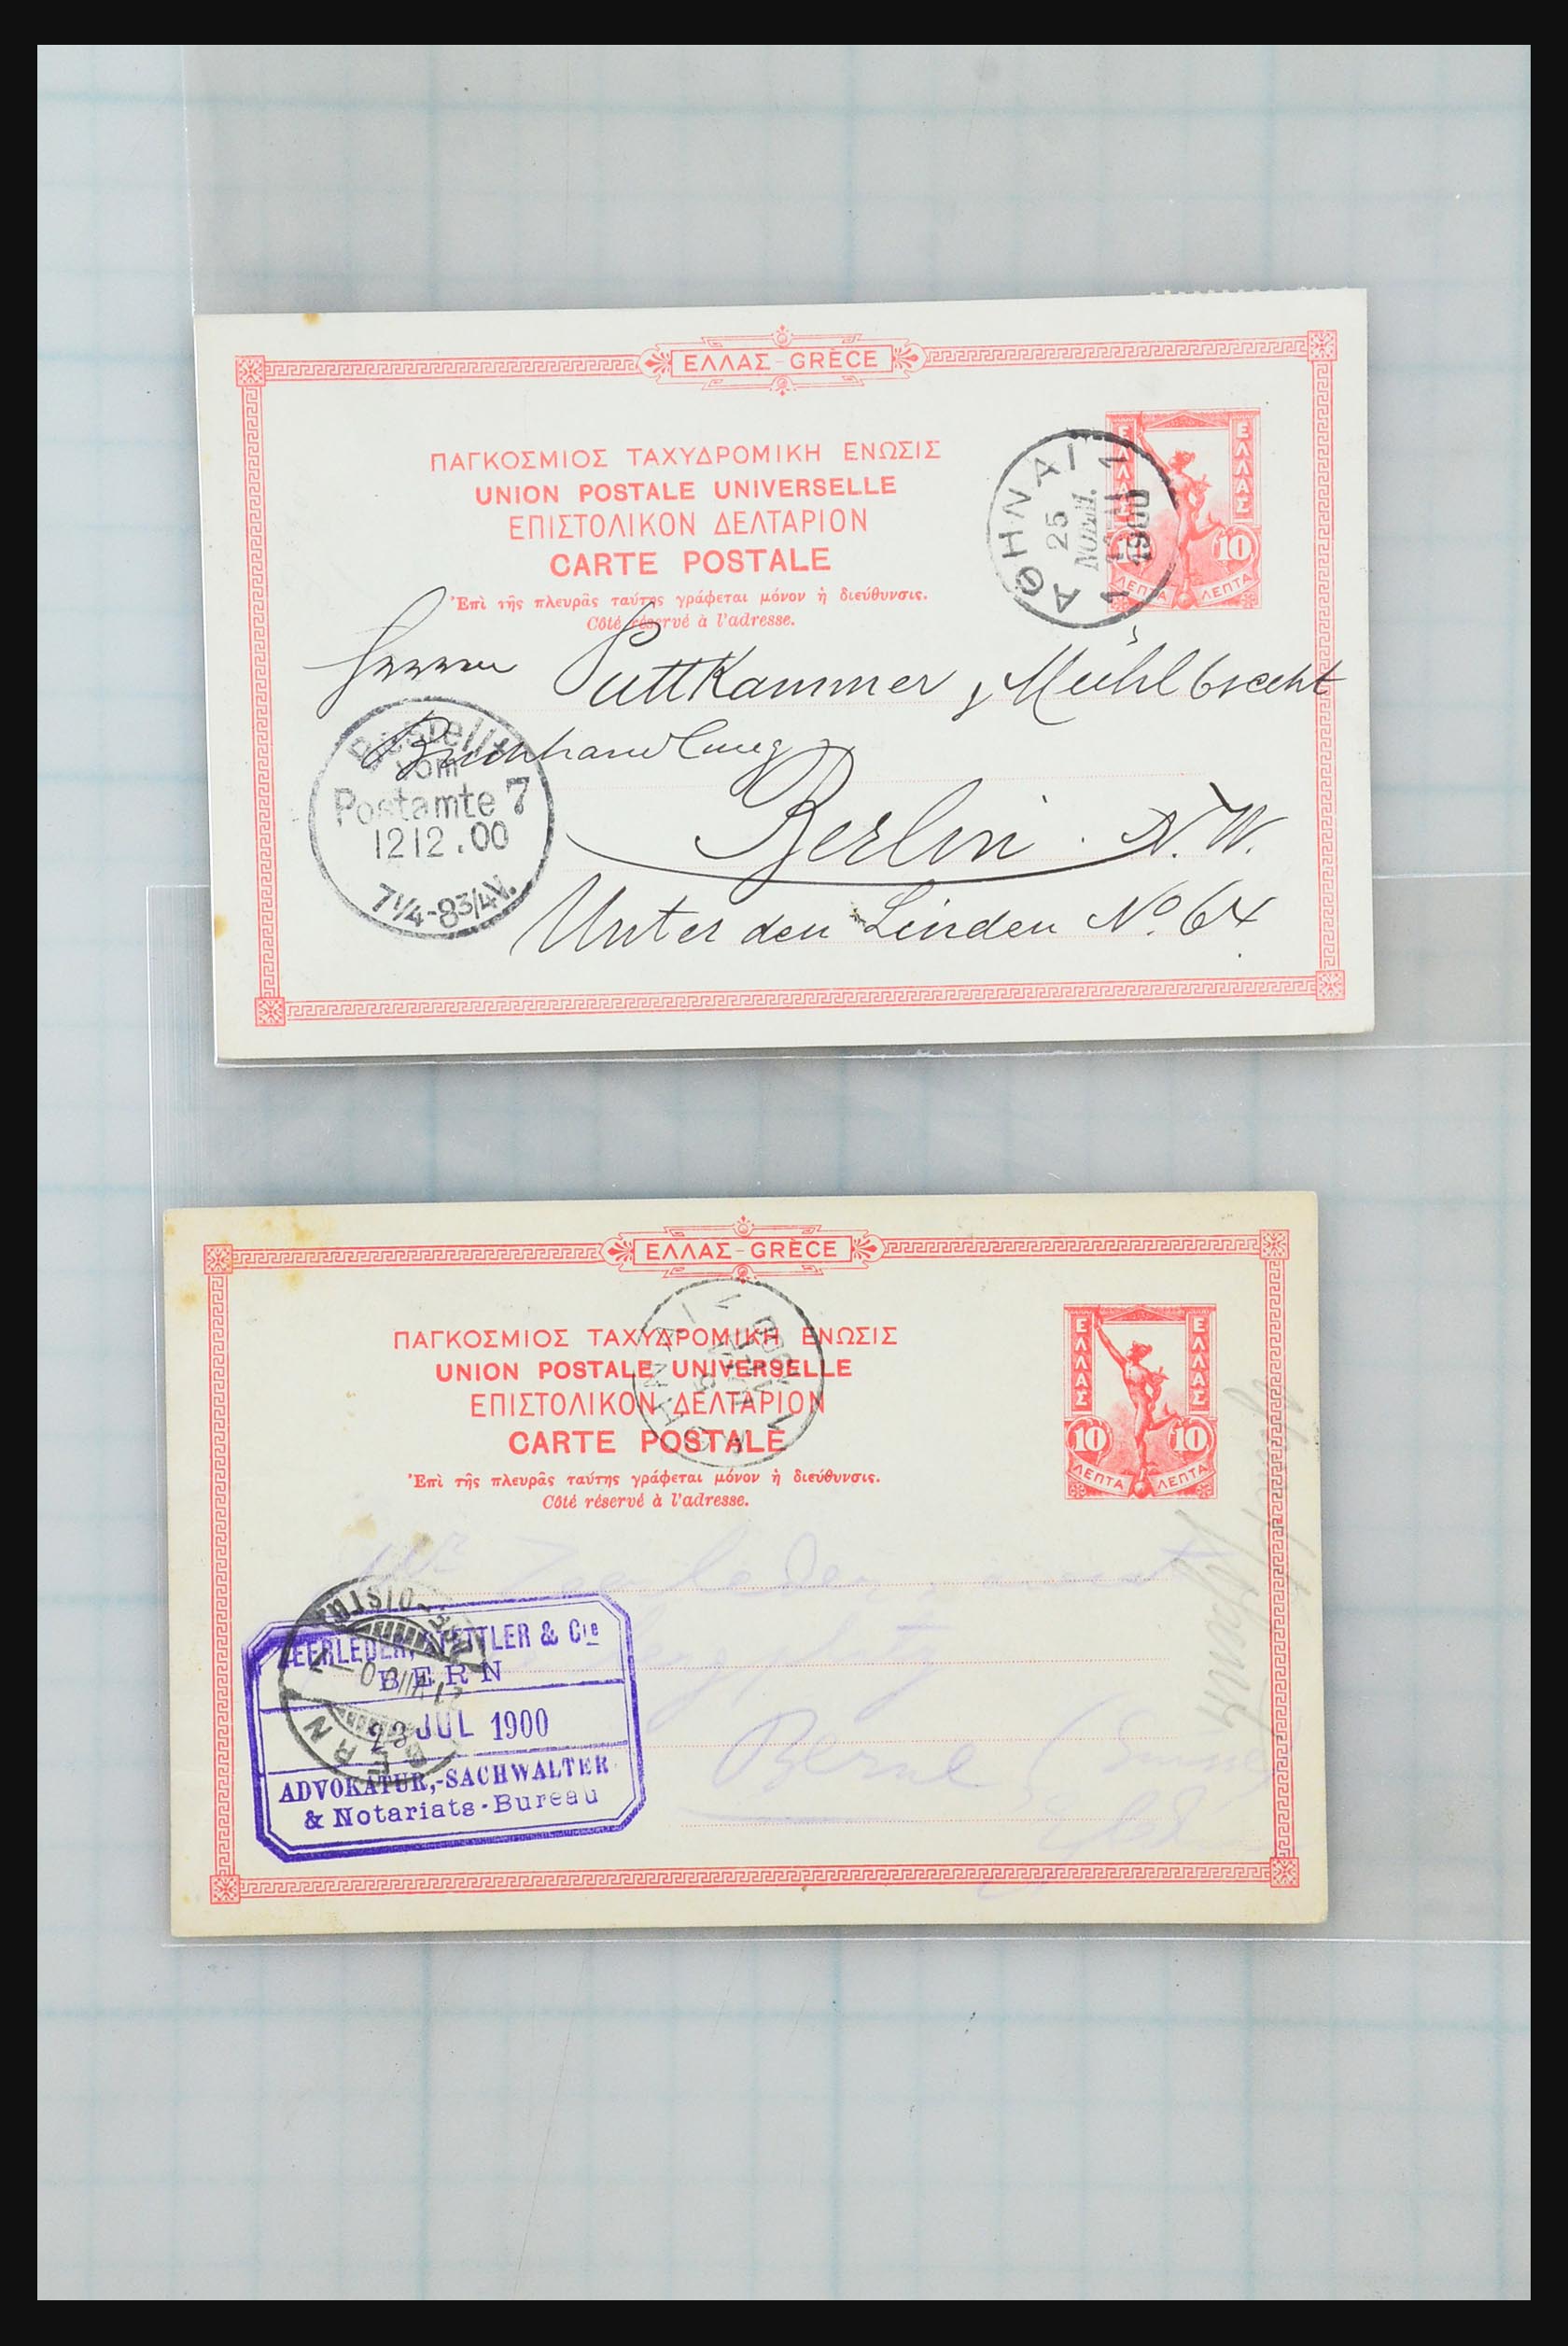 31358 024 - 31358 Portugal/Luxemburg/Griekenland brieven 1880-1960.